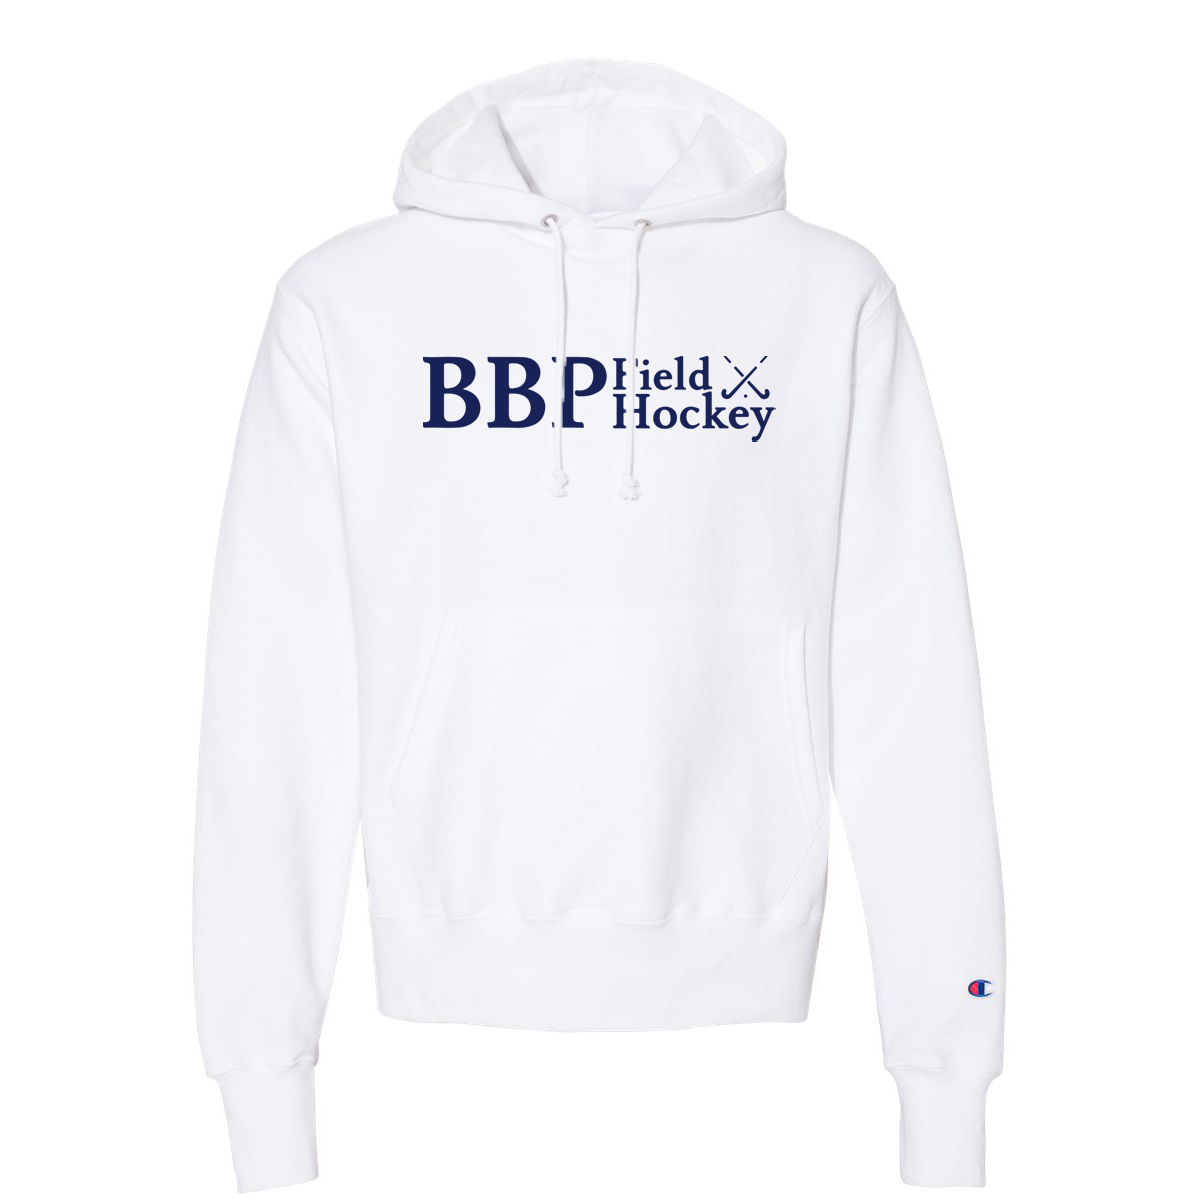 BBP Field Hockey Champion Reverse Weave Sweatshirt